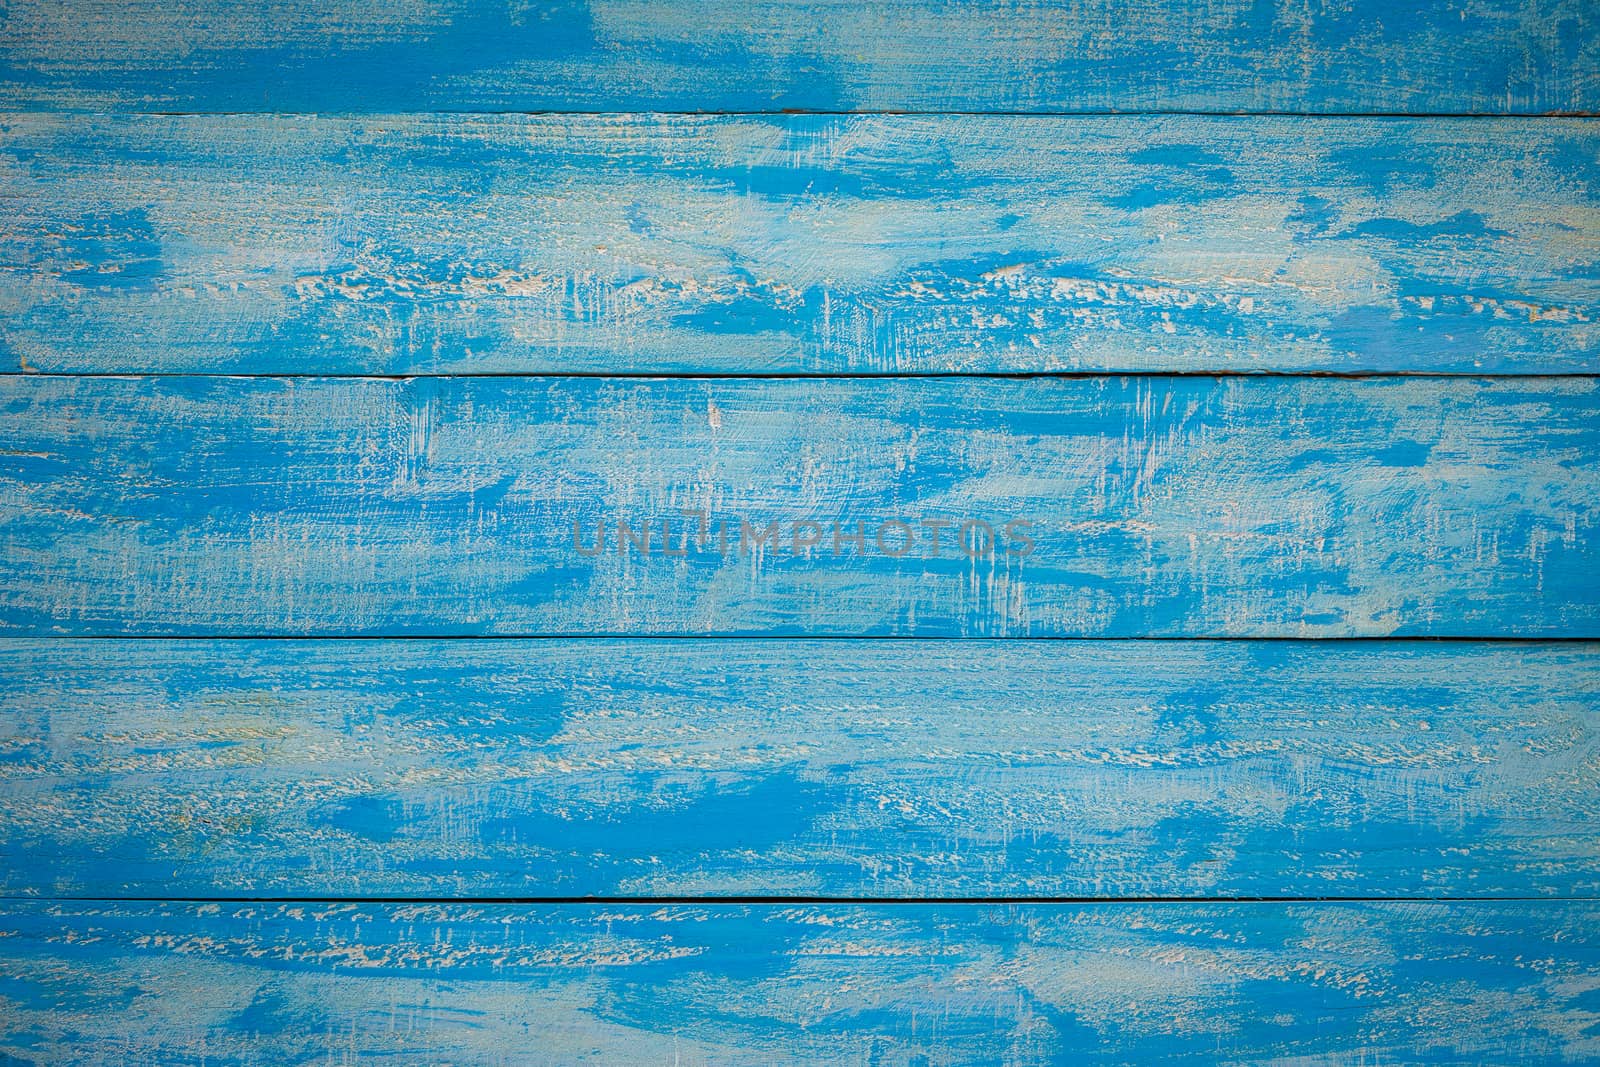 Old Blue Wood Slats Rustic Shabby Horizontal Background.